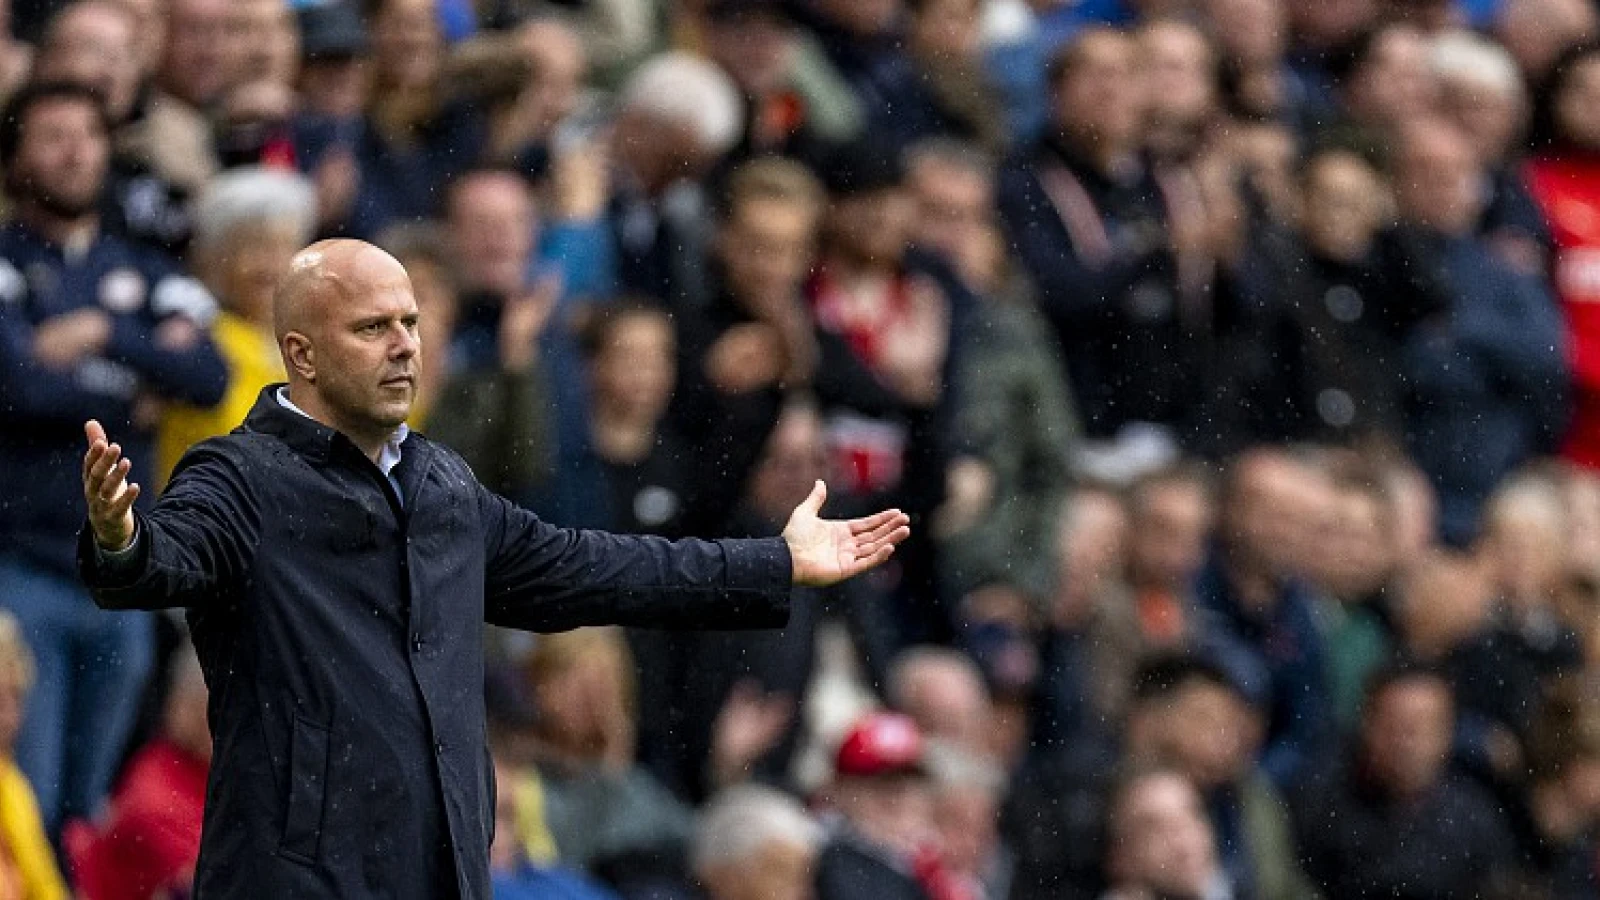 Grueter ziet negatieve trend: 'Dit is precies wat vorig jaar gebeurde met Feyenoord'